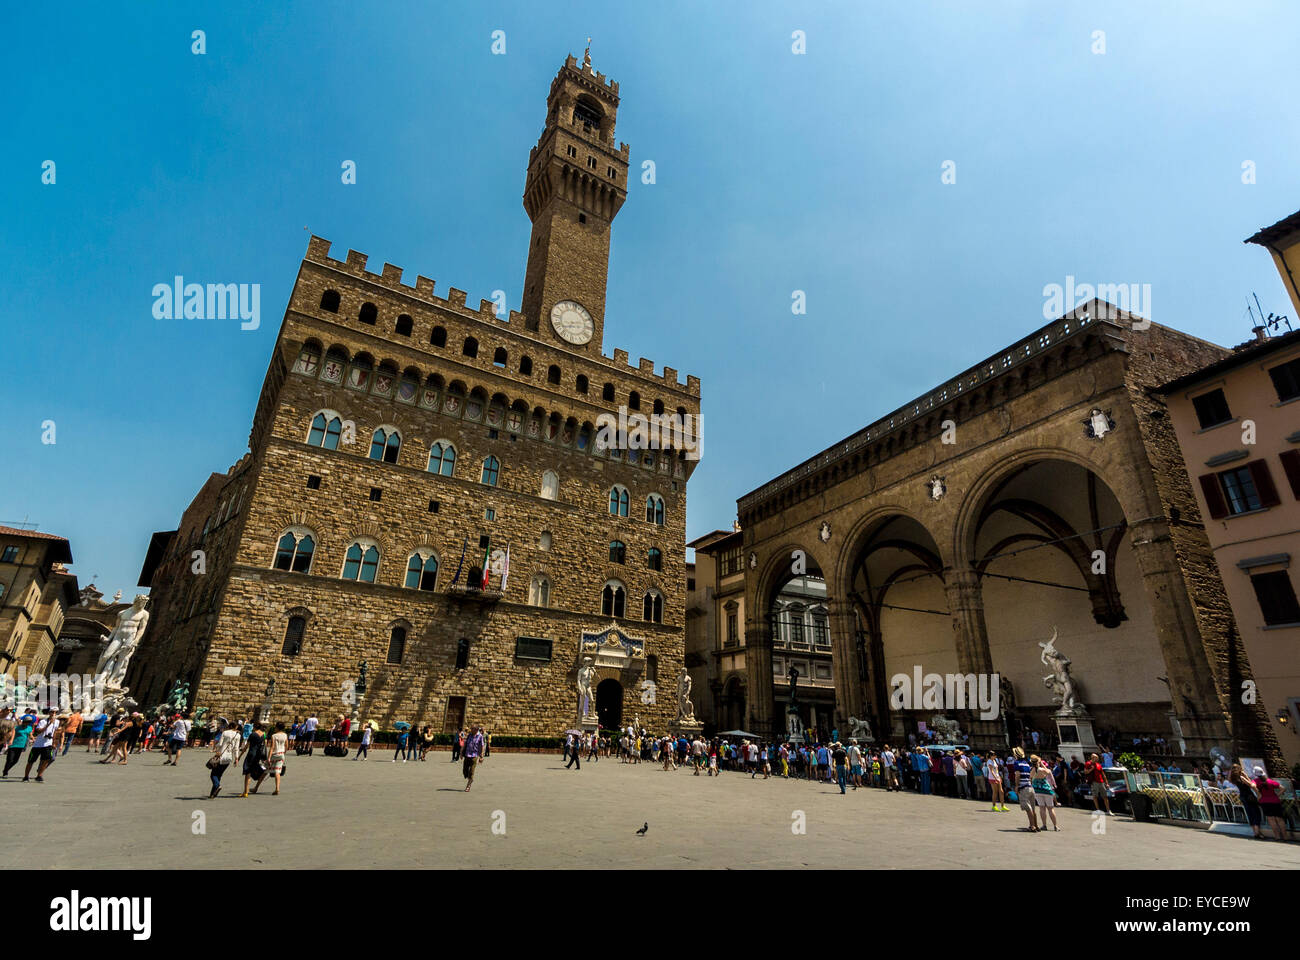 Le Palazzo Vecchio donne sur la Piazza della Signoria. Florence. Italie. Banque D'Images